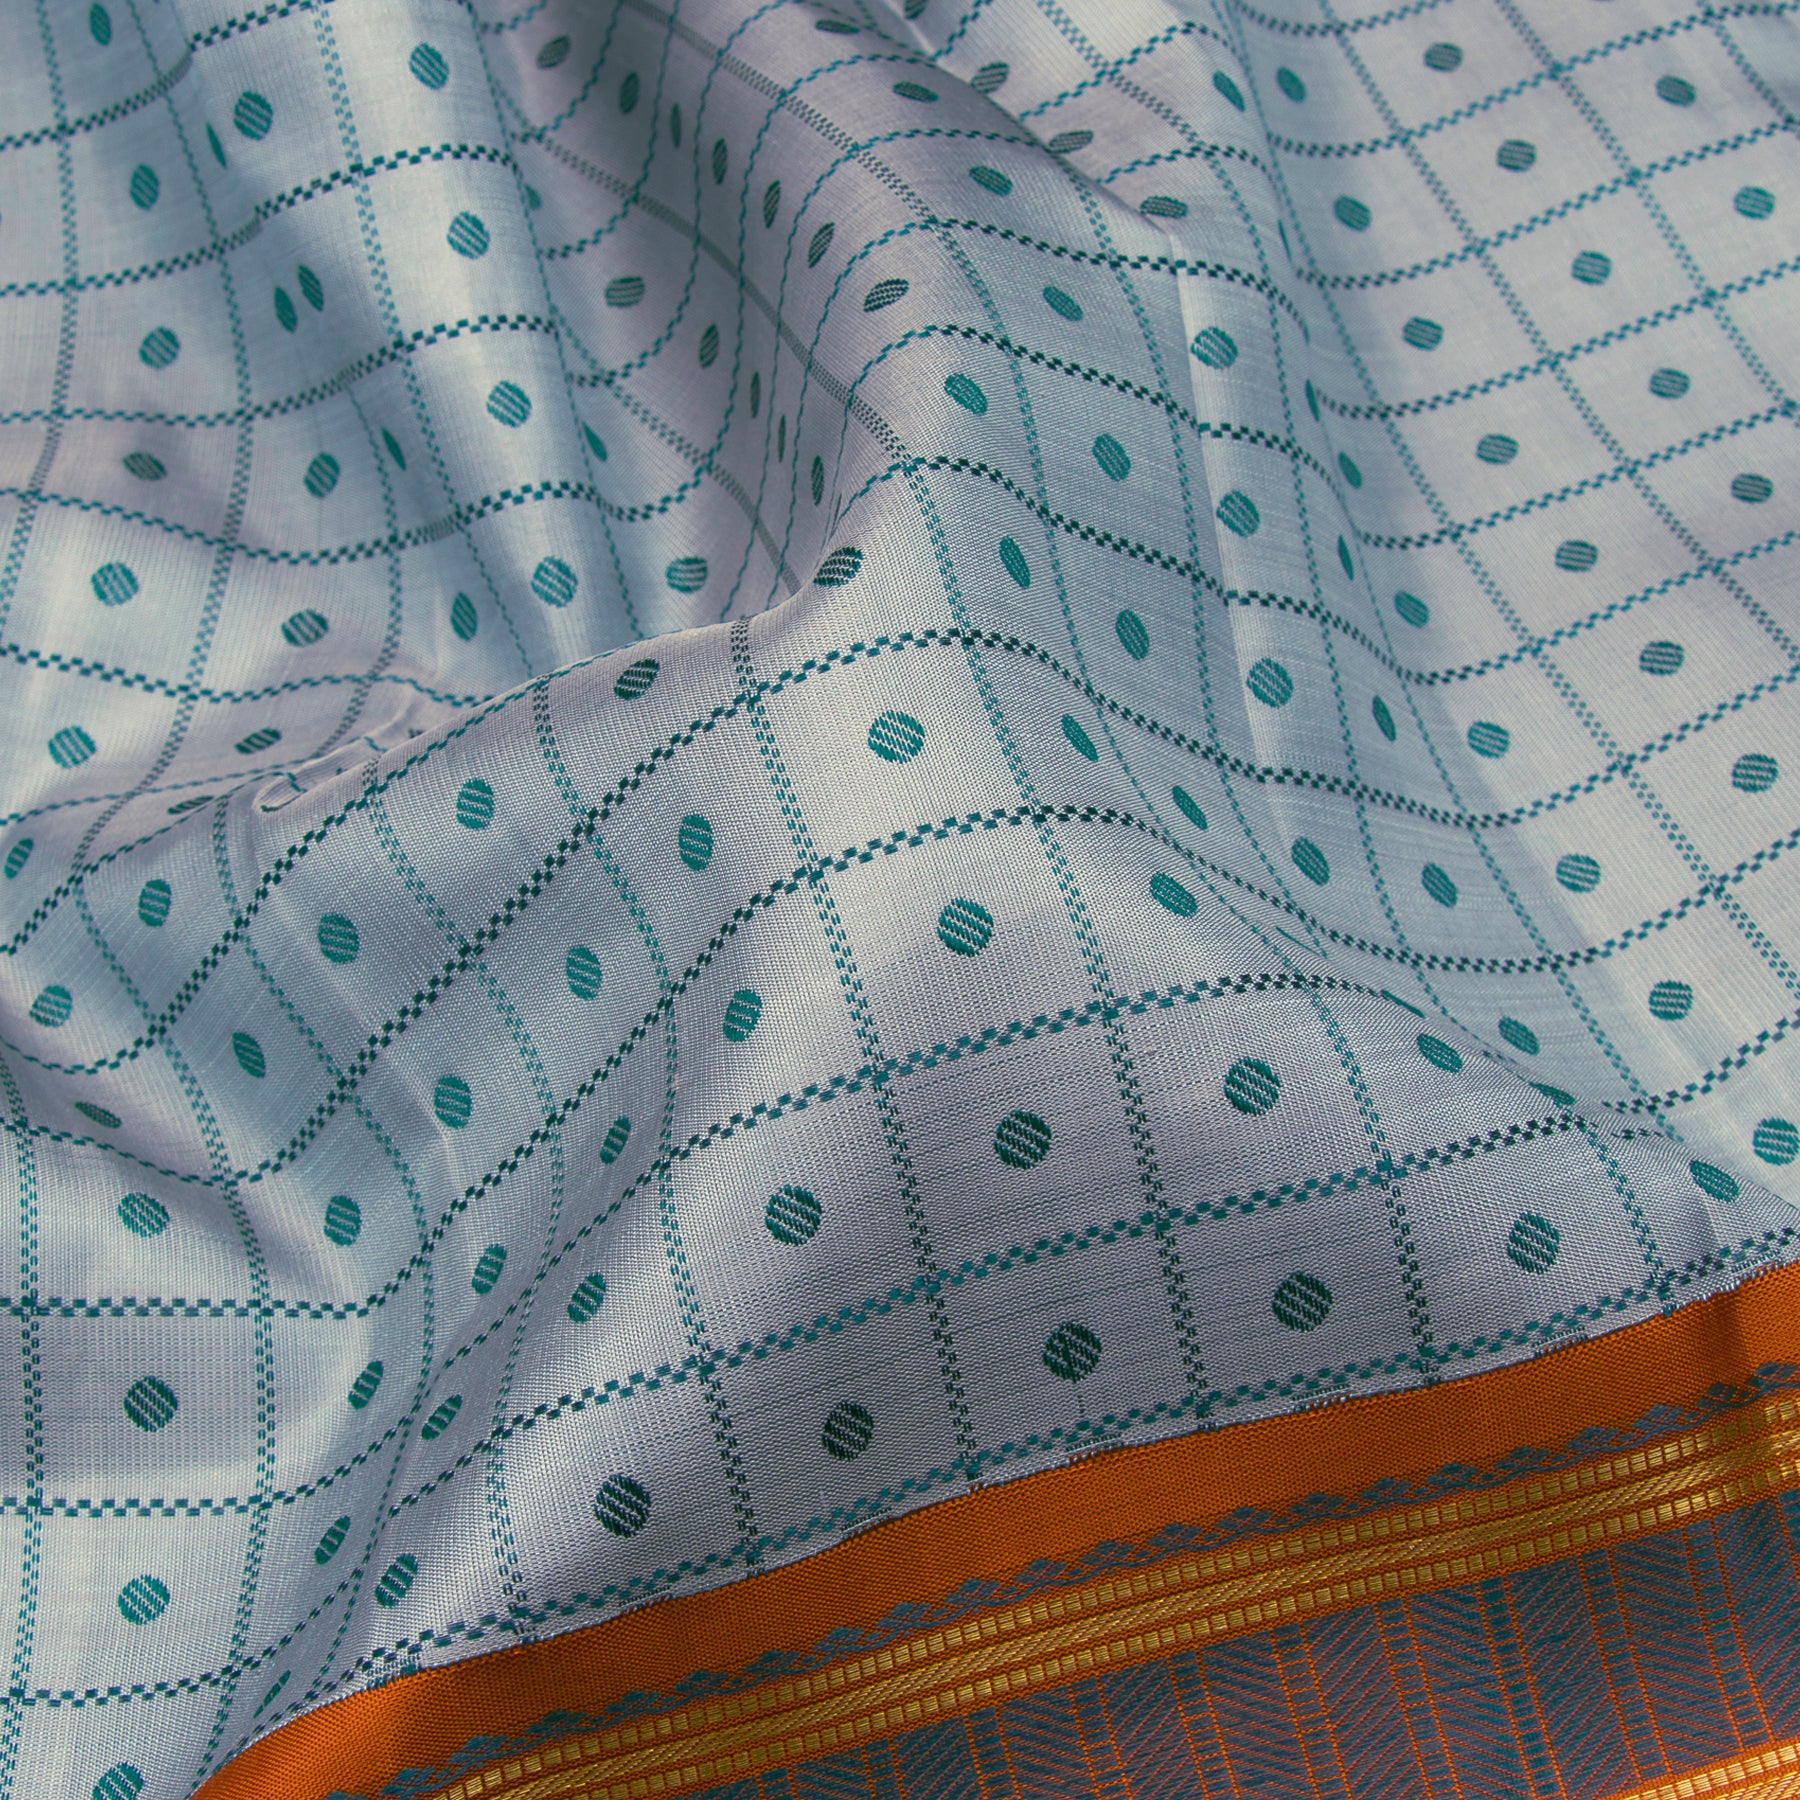 Kanakavalli Kanjivaram Silk Sari 23-595-HS001-09900 - Fabric View